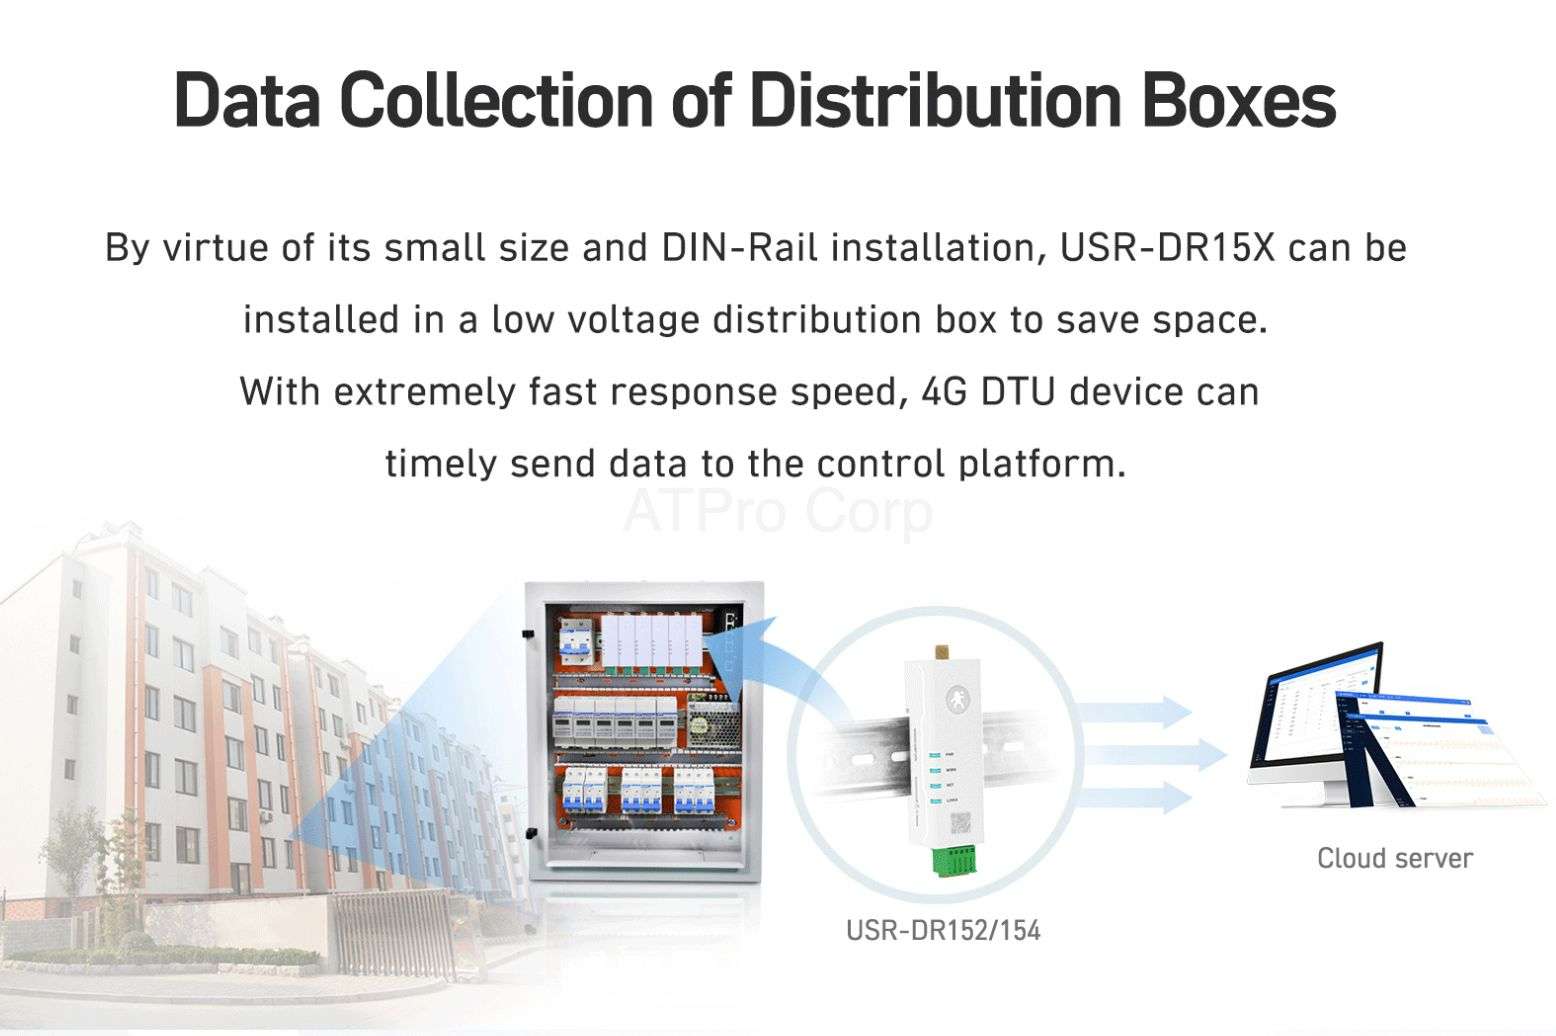 USR-DR152 BỘ CHUYỂN ĐỔI TÍN HIỆU DIN-RAIL RS232 SANG 4G LTE